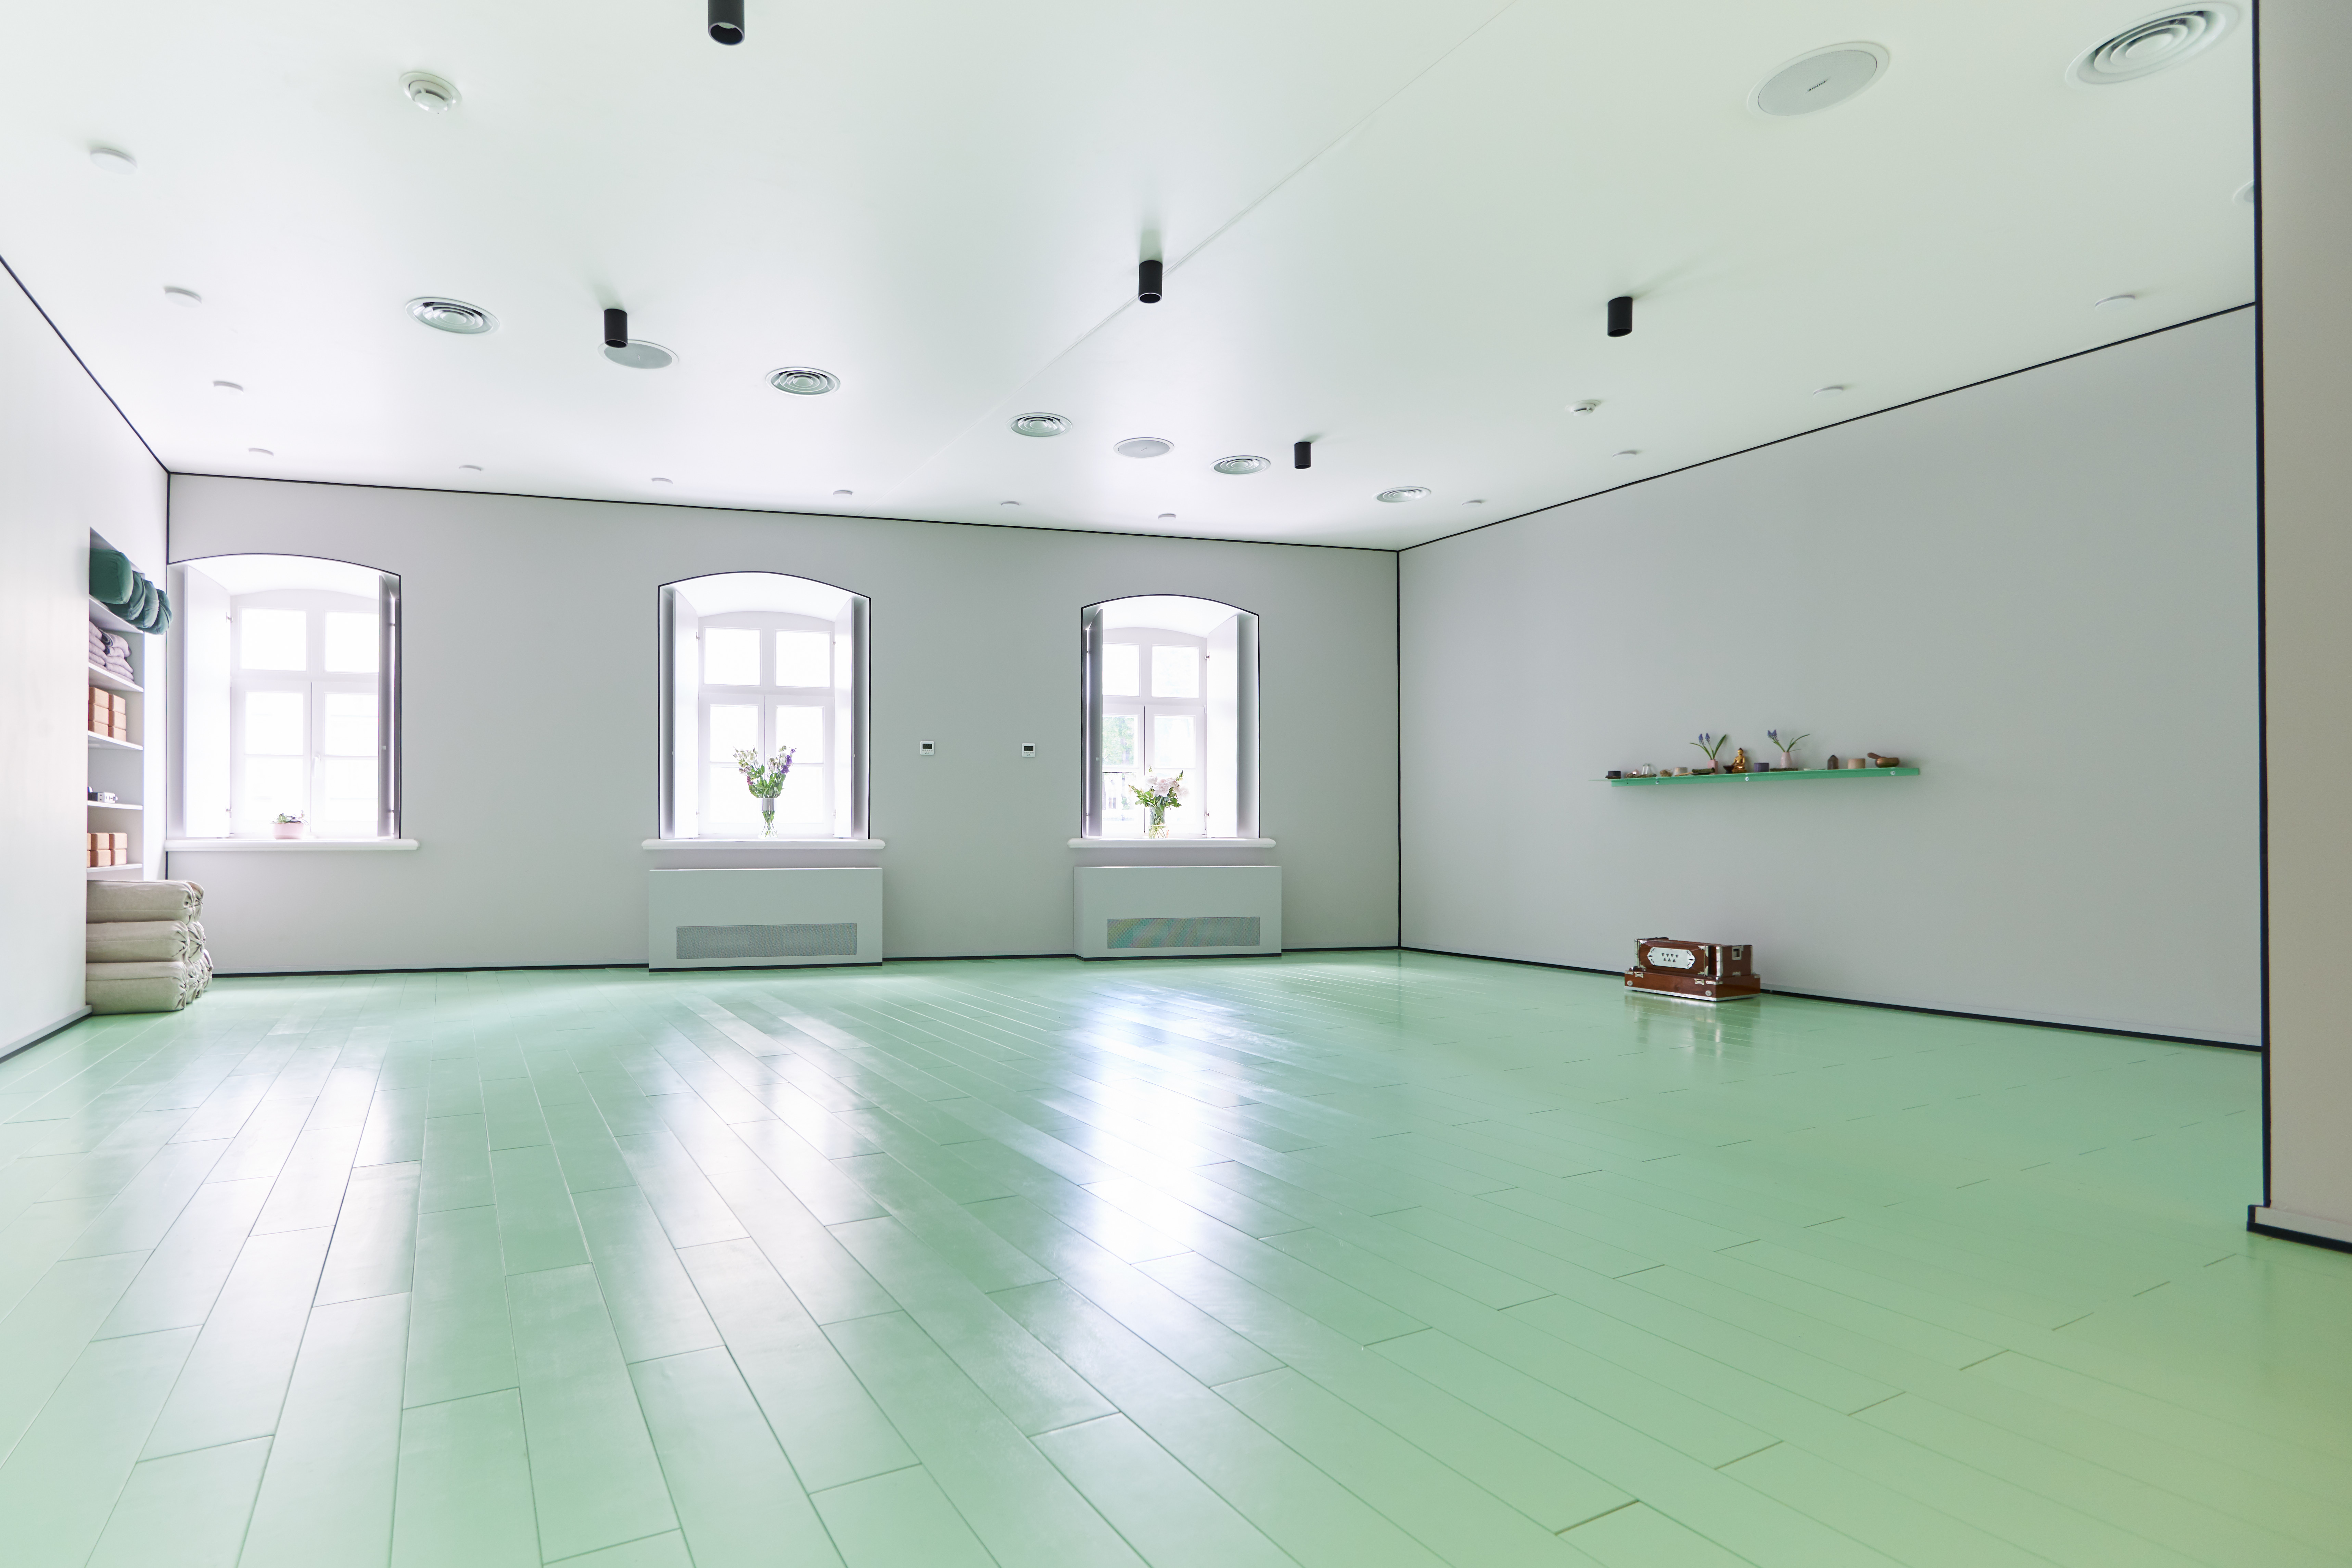 Как выглядит новая студия Mia Yoga с интерьером от Гарри Нуриева (фото 2)